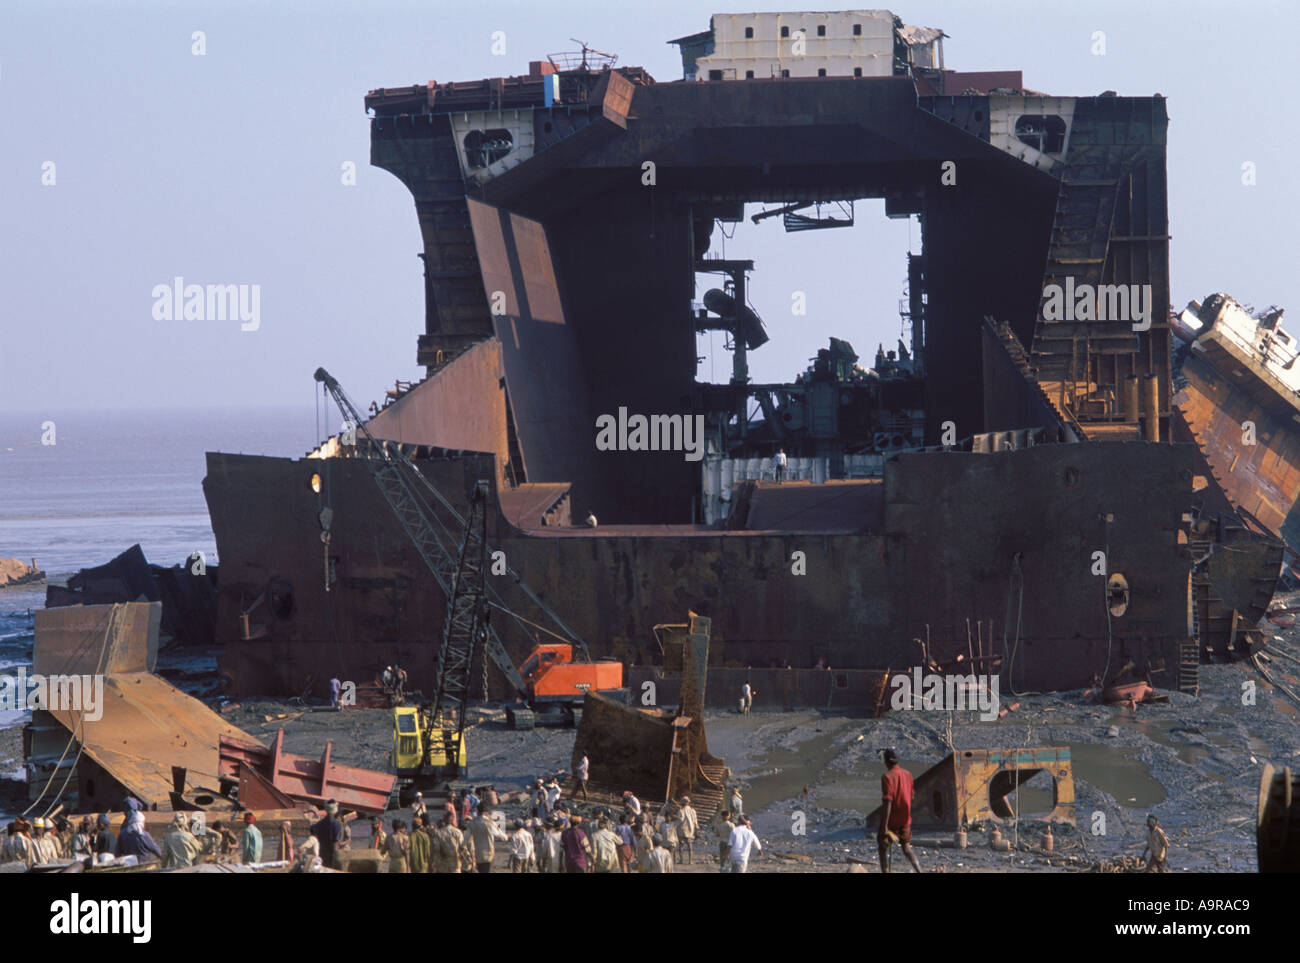 Alang shipbreaking shipyard Stock Photo